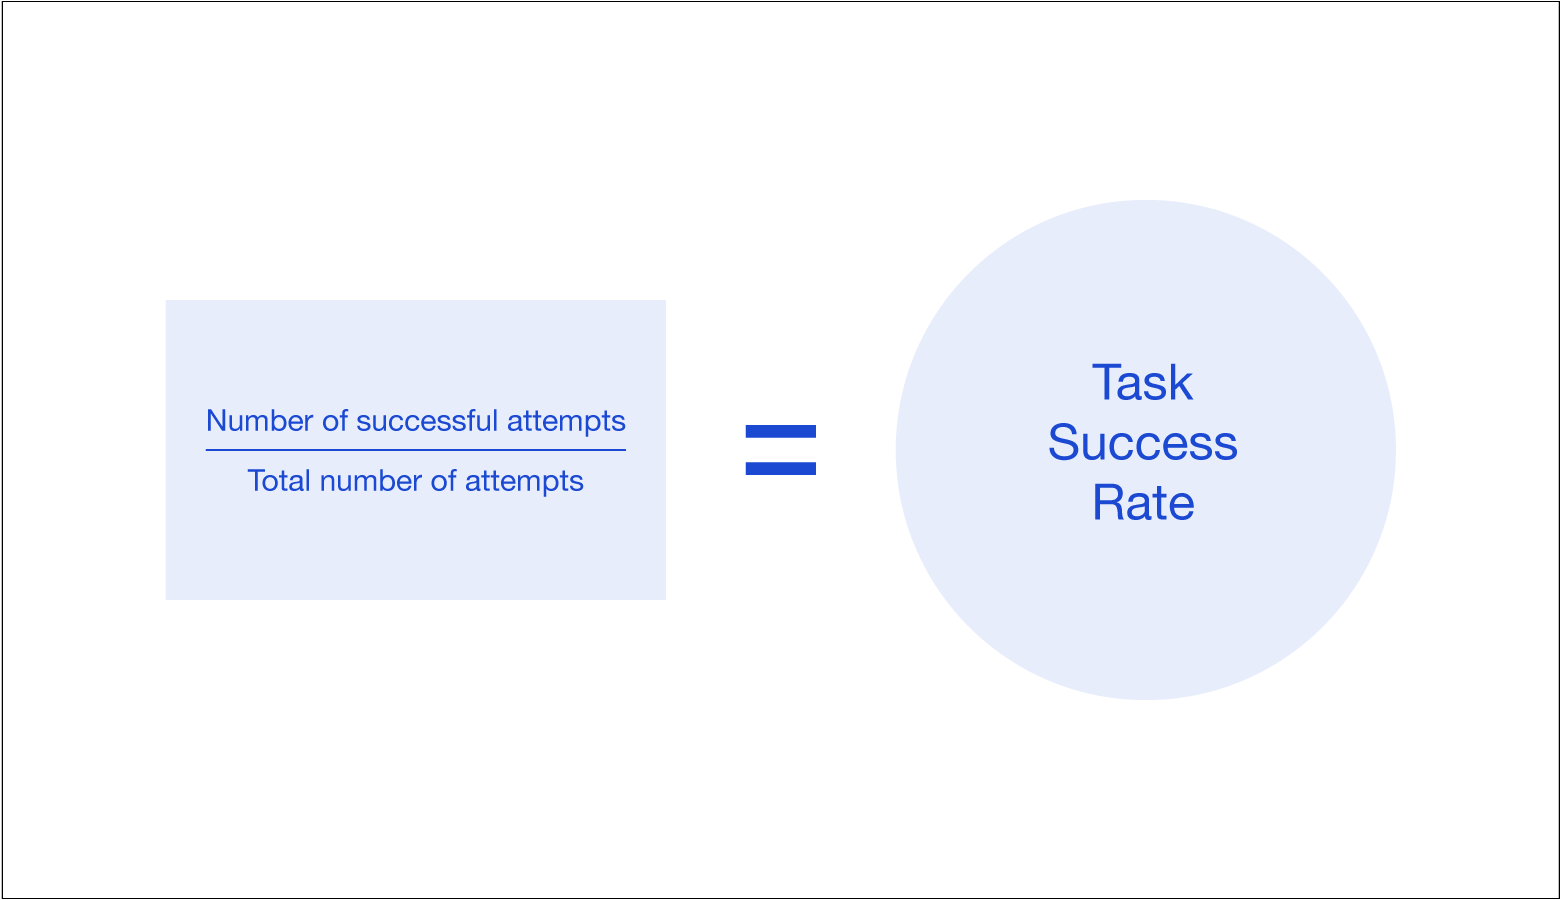 Sin objetivos claramente definidos, es imposible medir el éxito de la tarea.